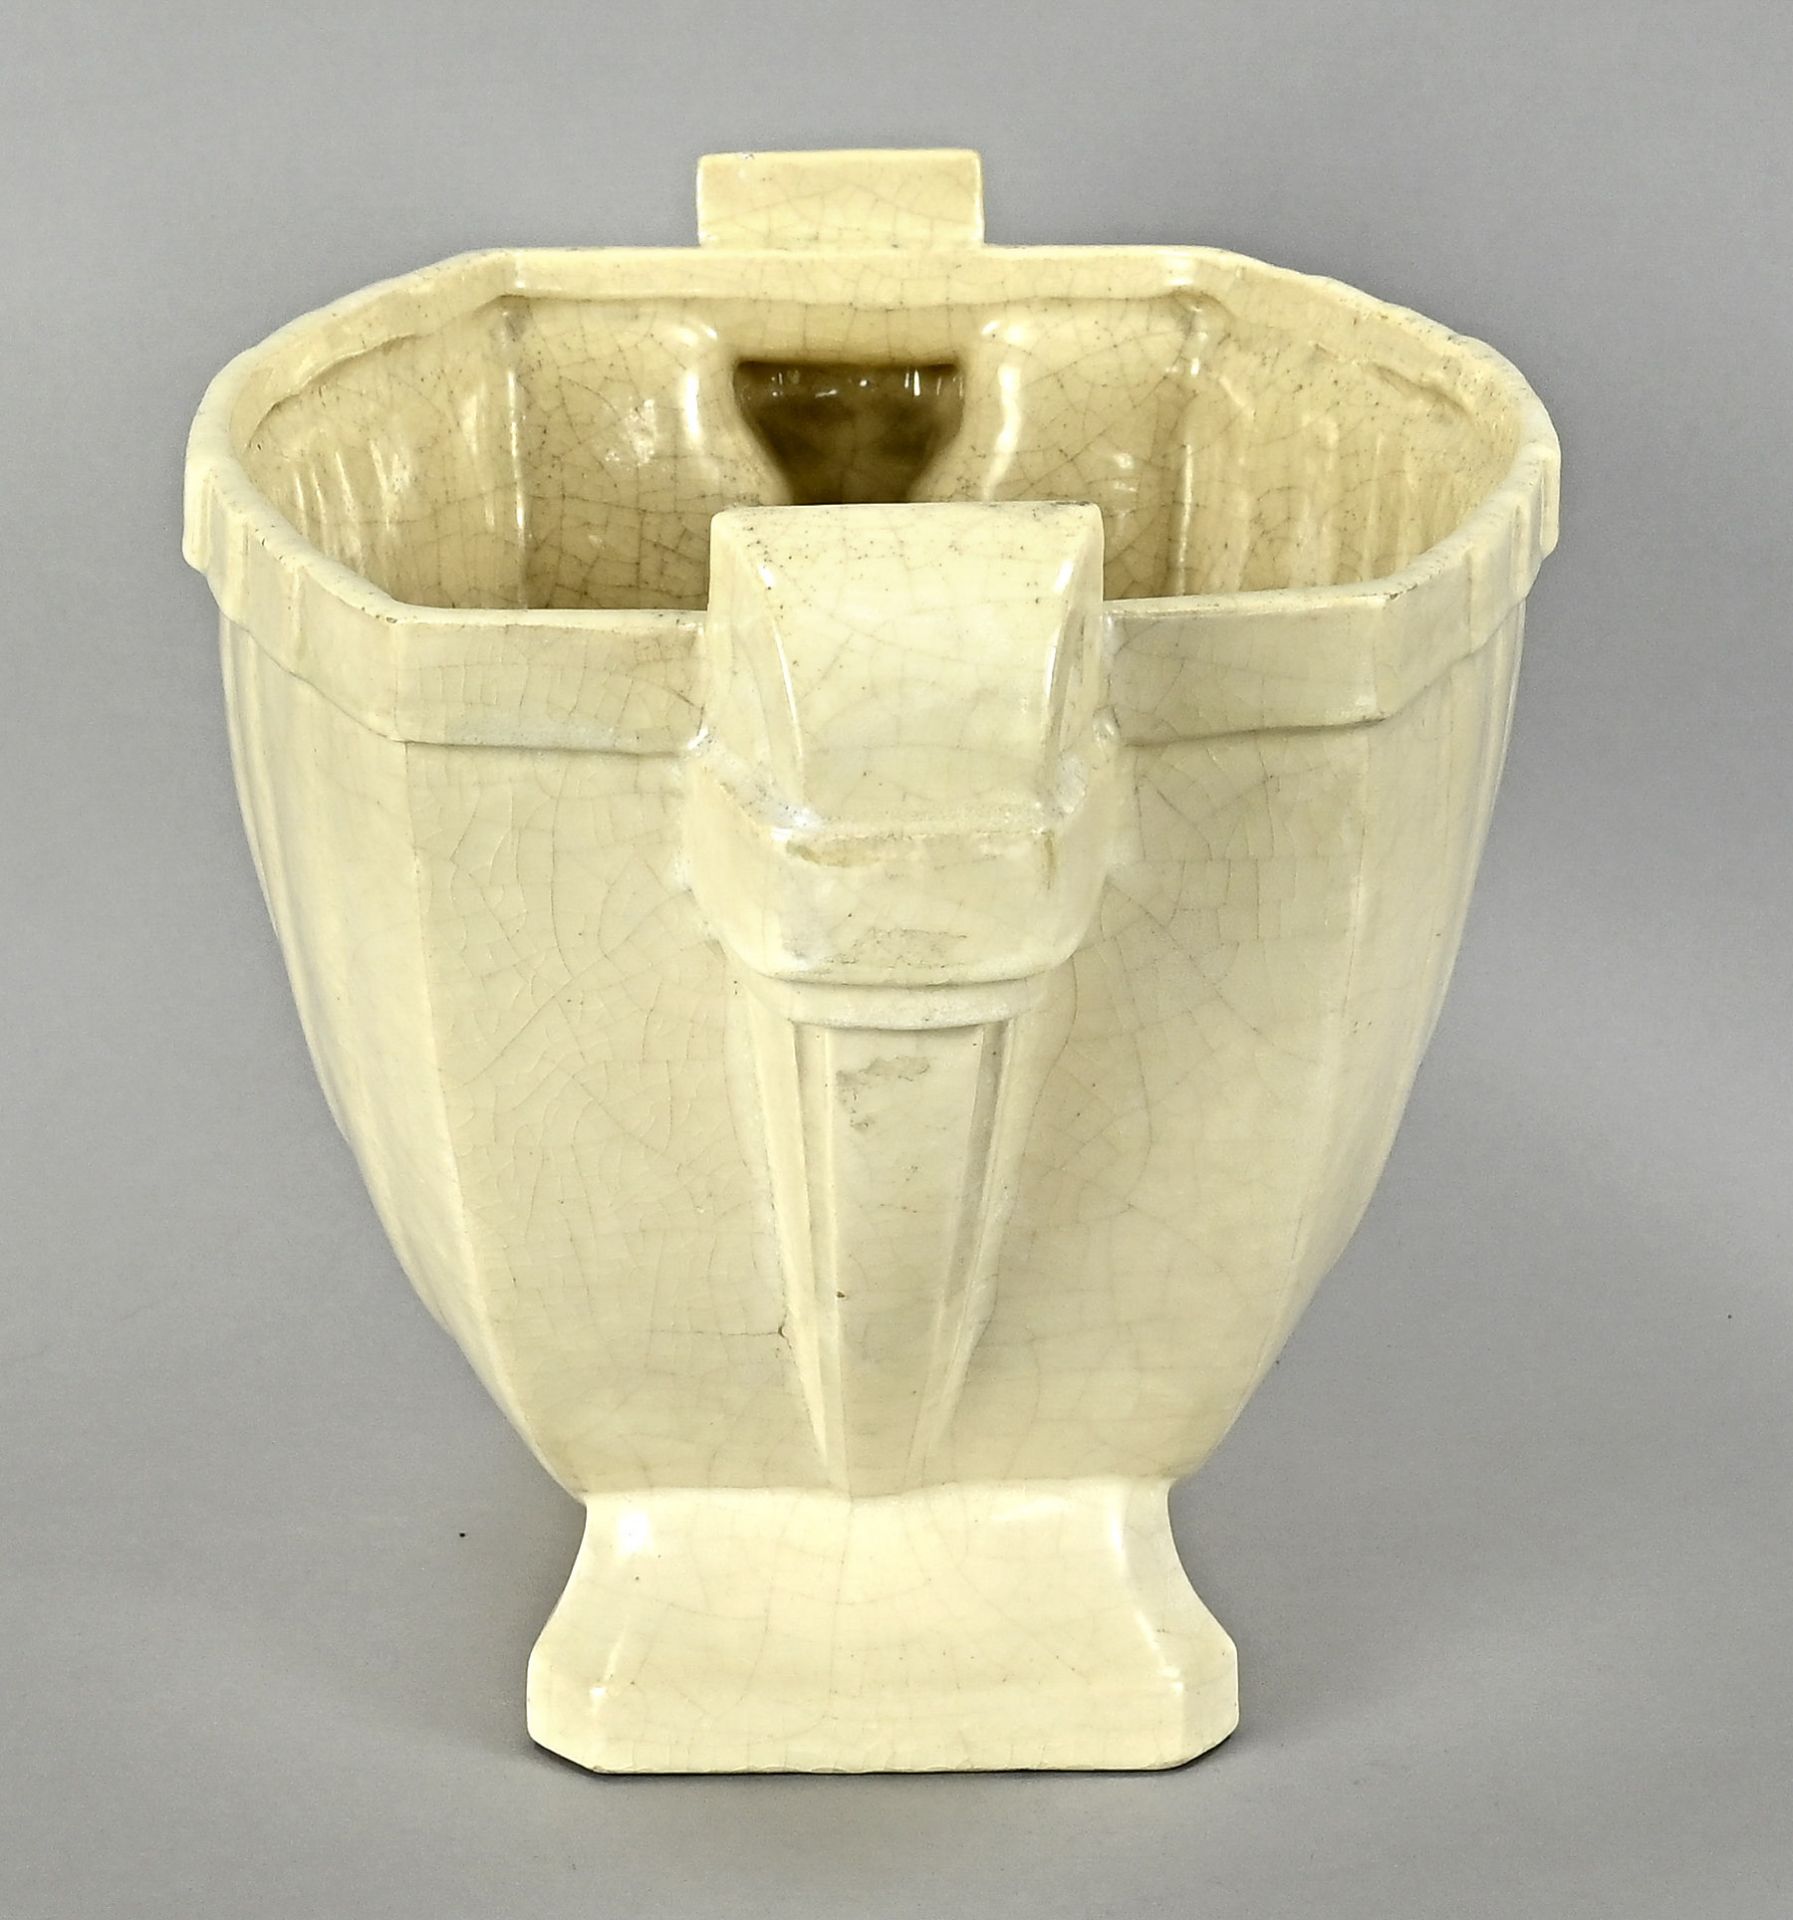 Art Deco vase, France around 1930, glazed ceramics, Roger France, height 20,7 cm, width 35 cm, dept - Image 3 of 5